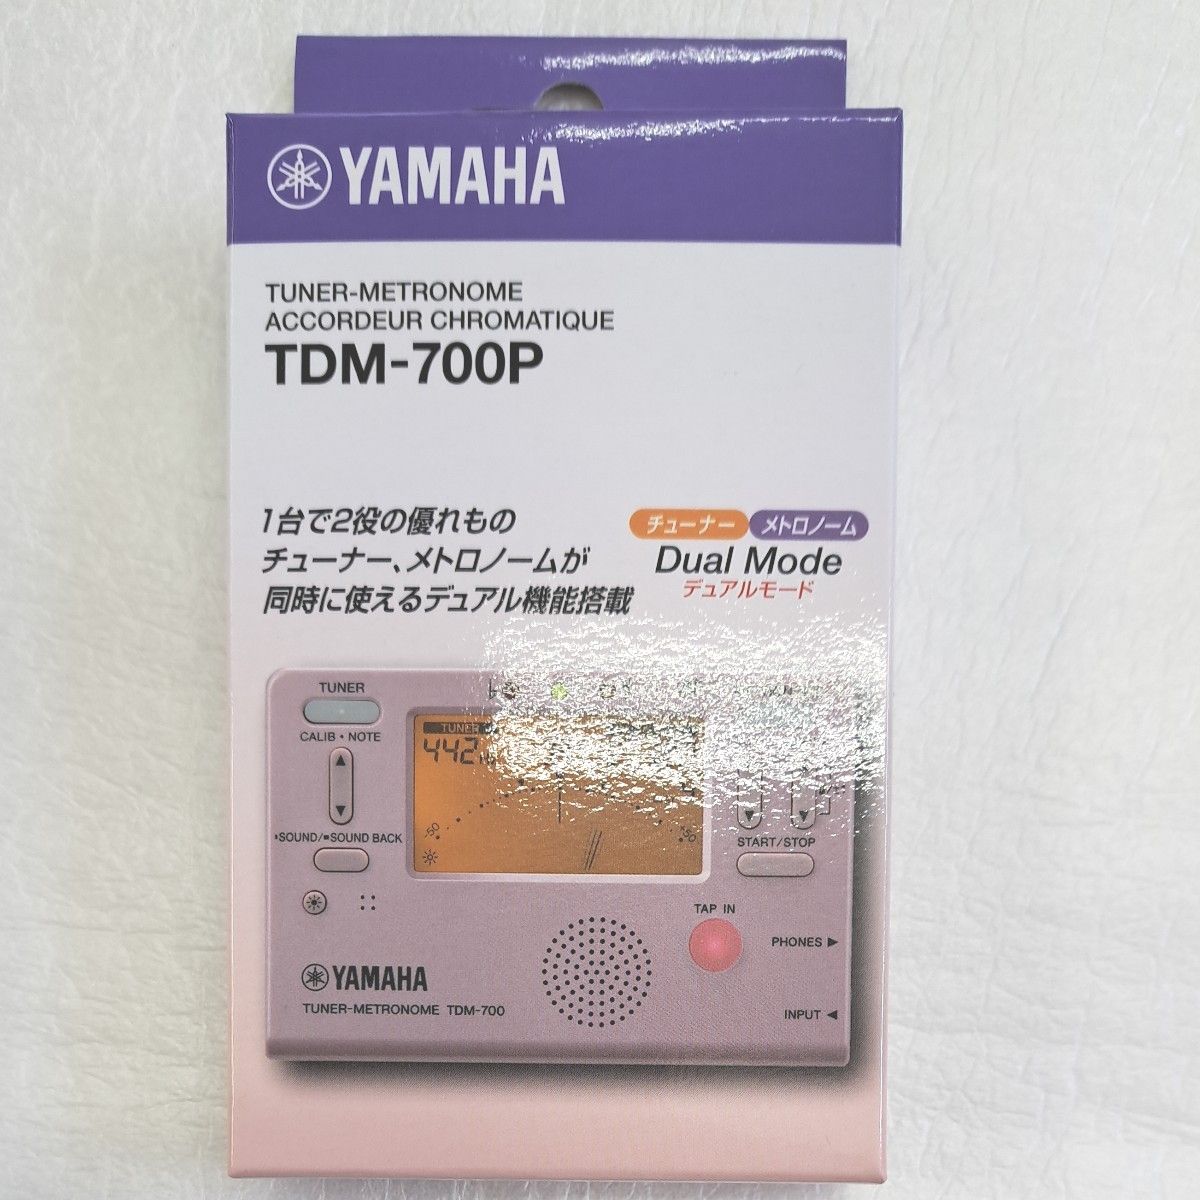 ヤマハ YAMAHA チューナーメトロノーム TDM-700P チューナーとメトロノームが同時に使えるデュアル機能搭載